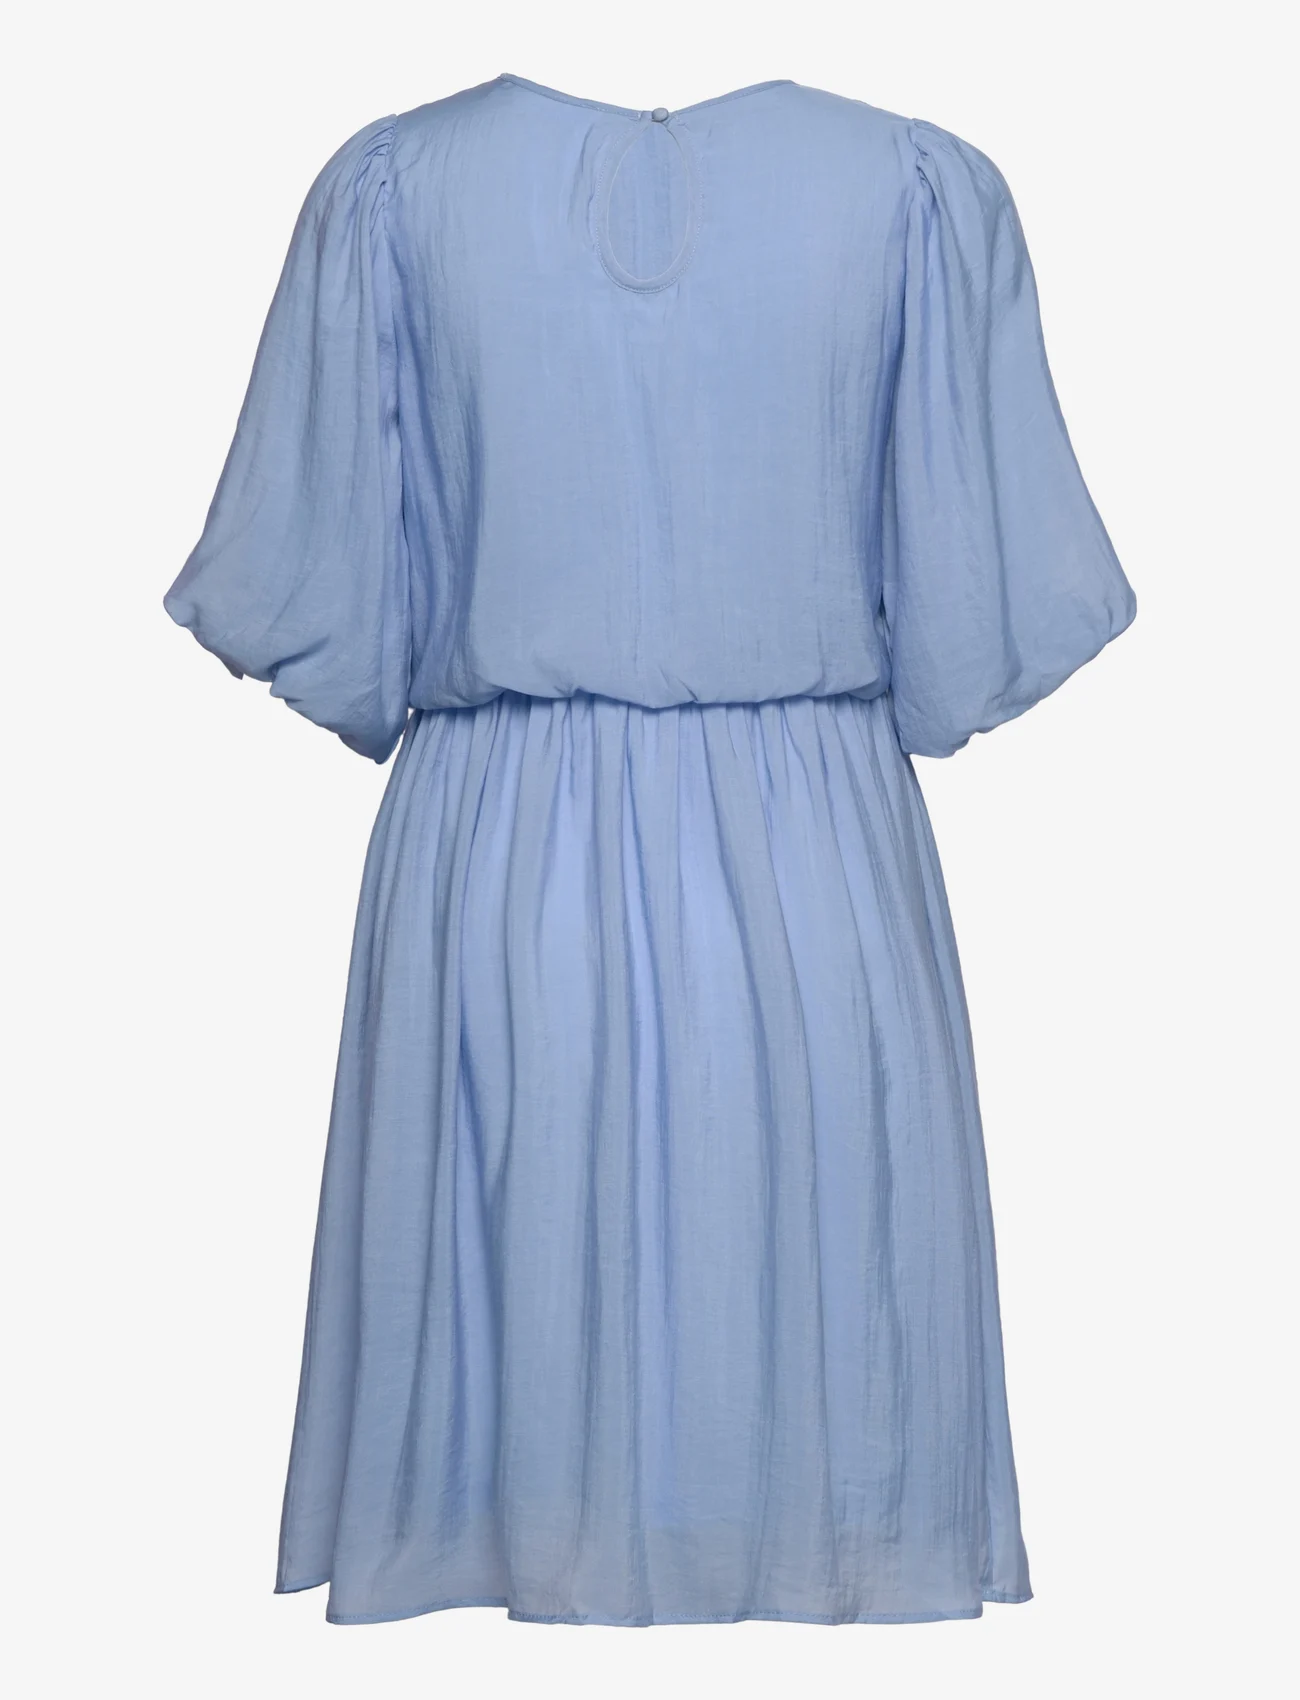 Selected Femme - SLFSULINA 2/4HORT DRESS M - kurze kleider - blue bell - 1